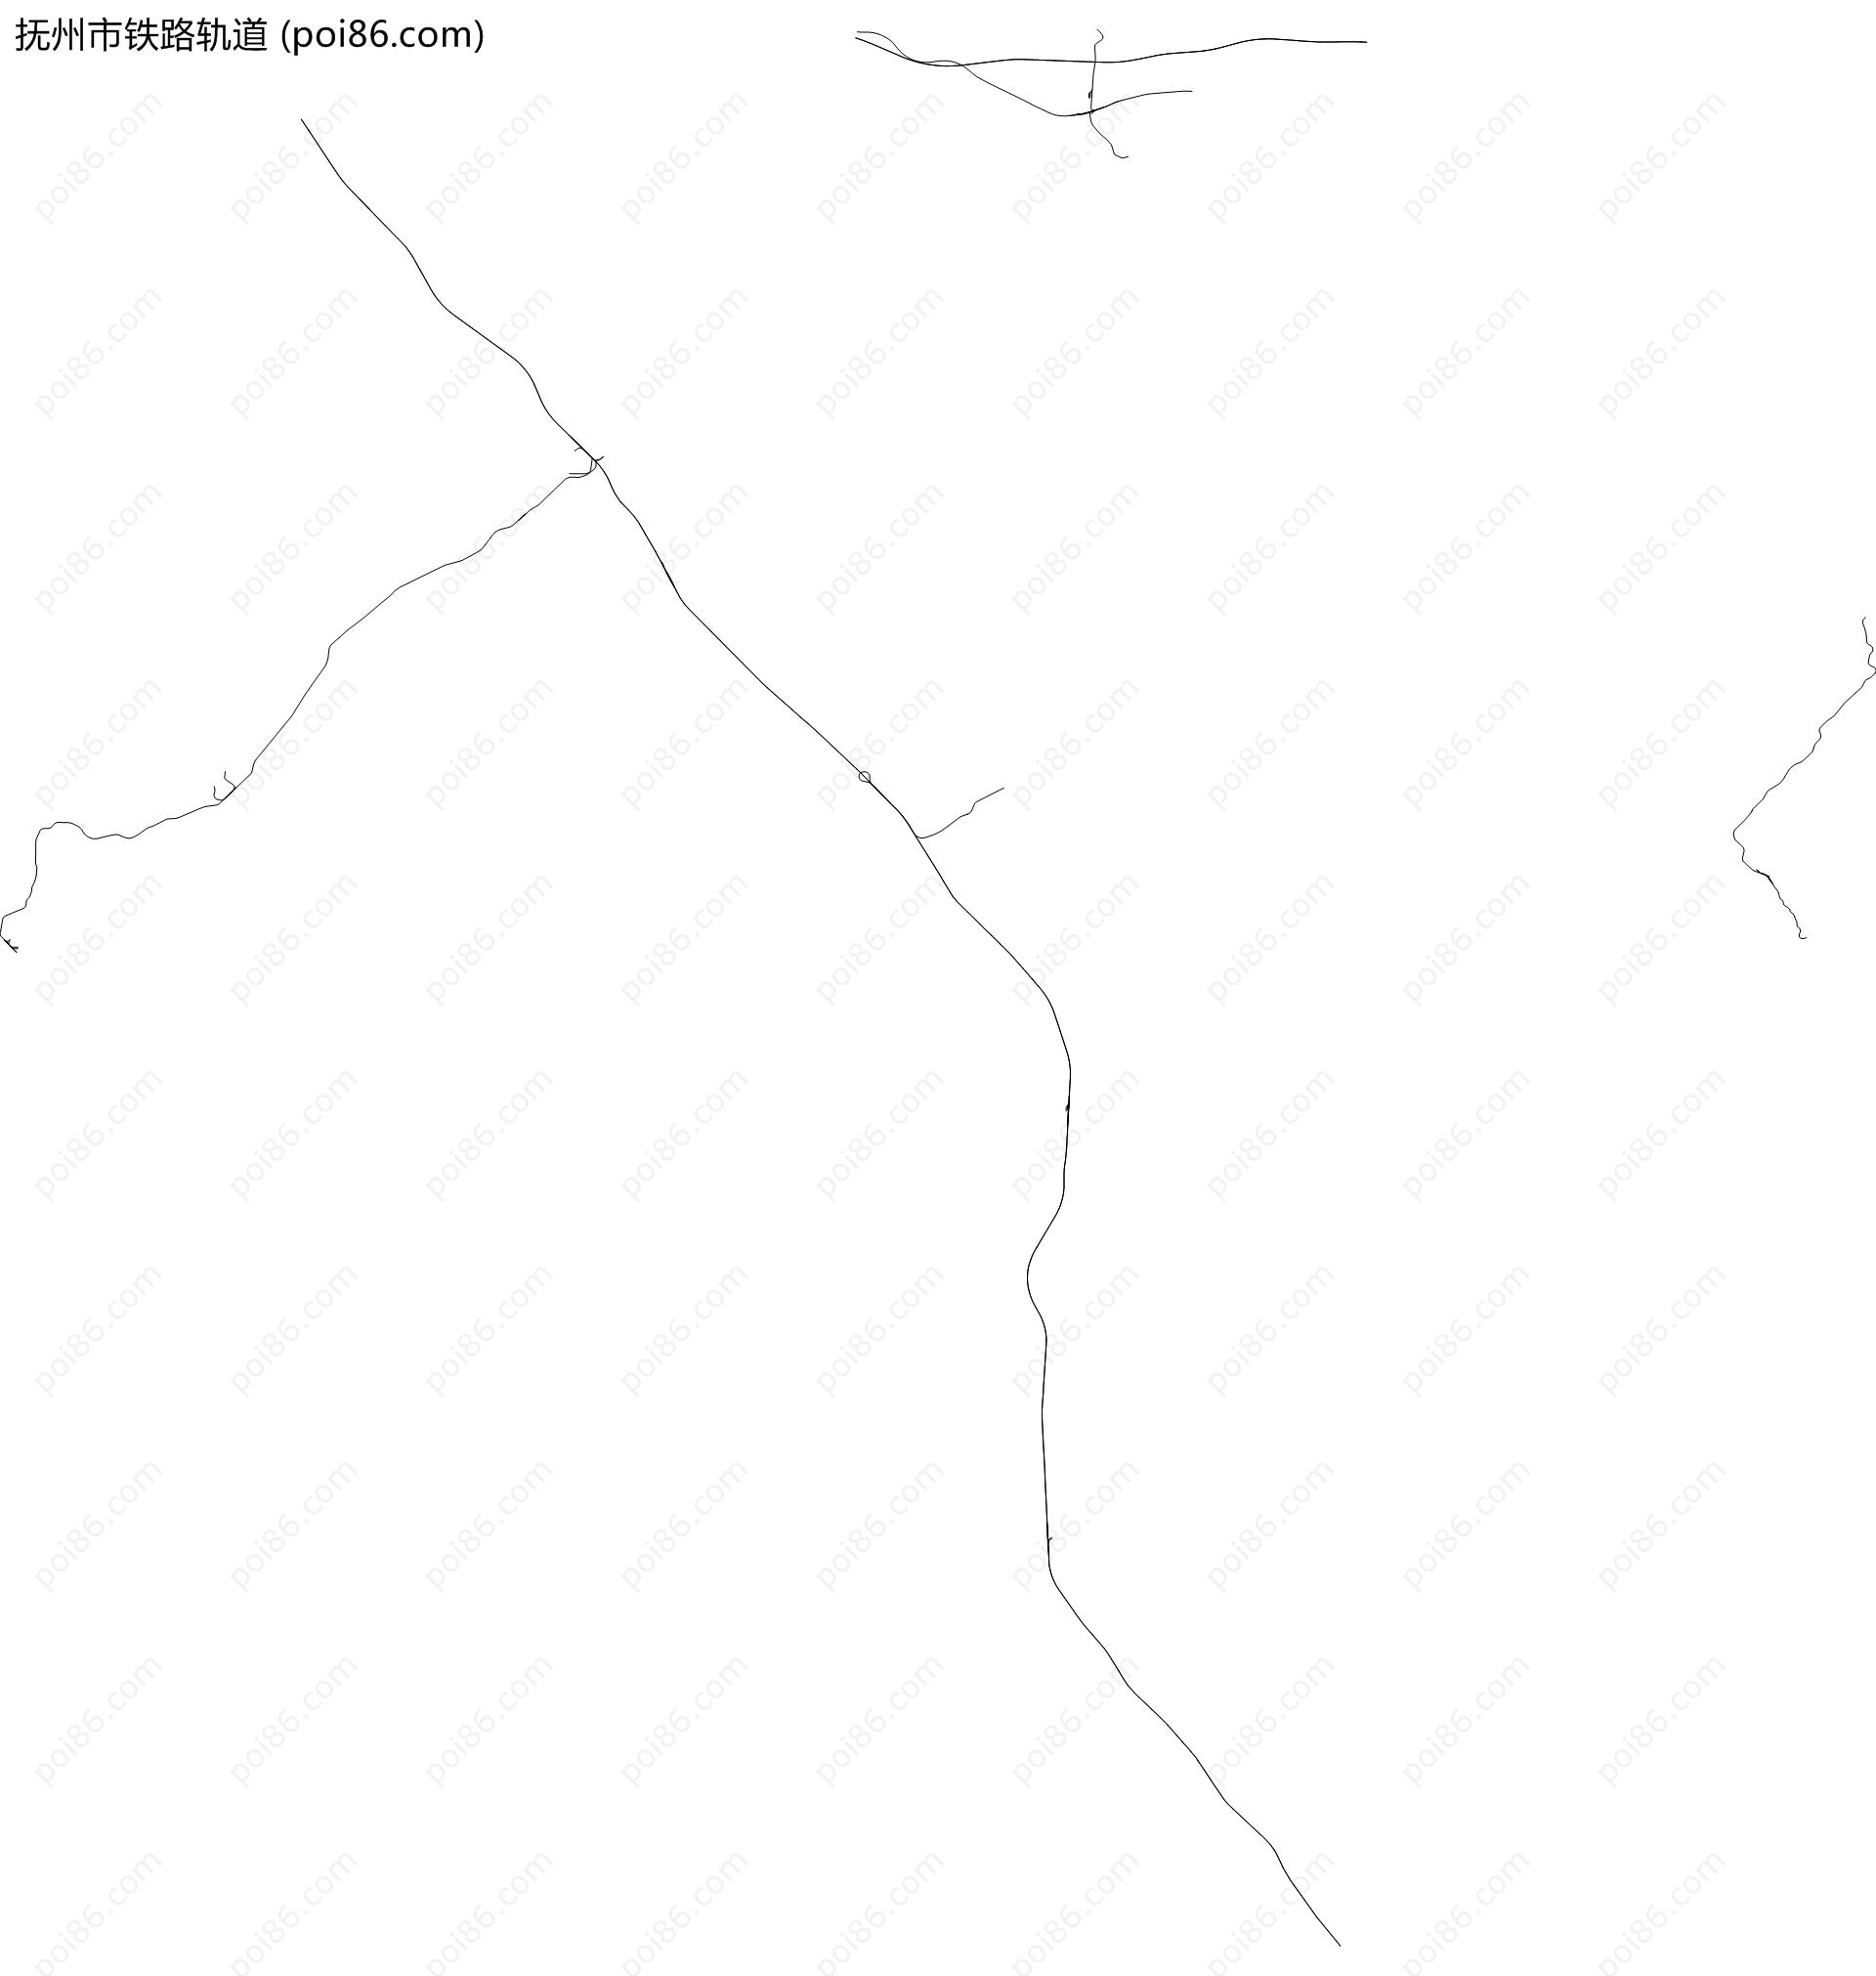 抚州市铁路轨道地图